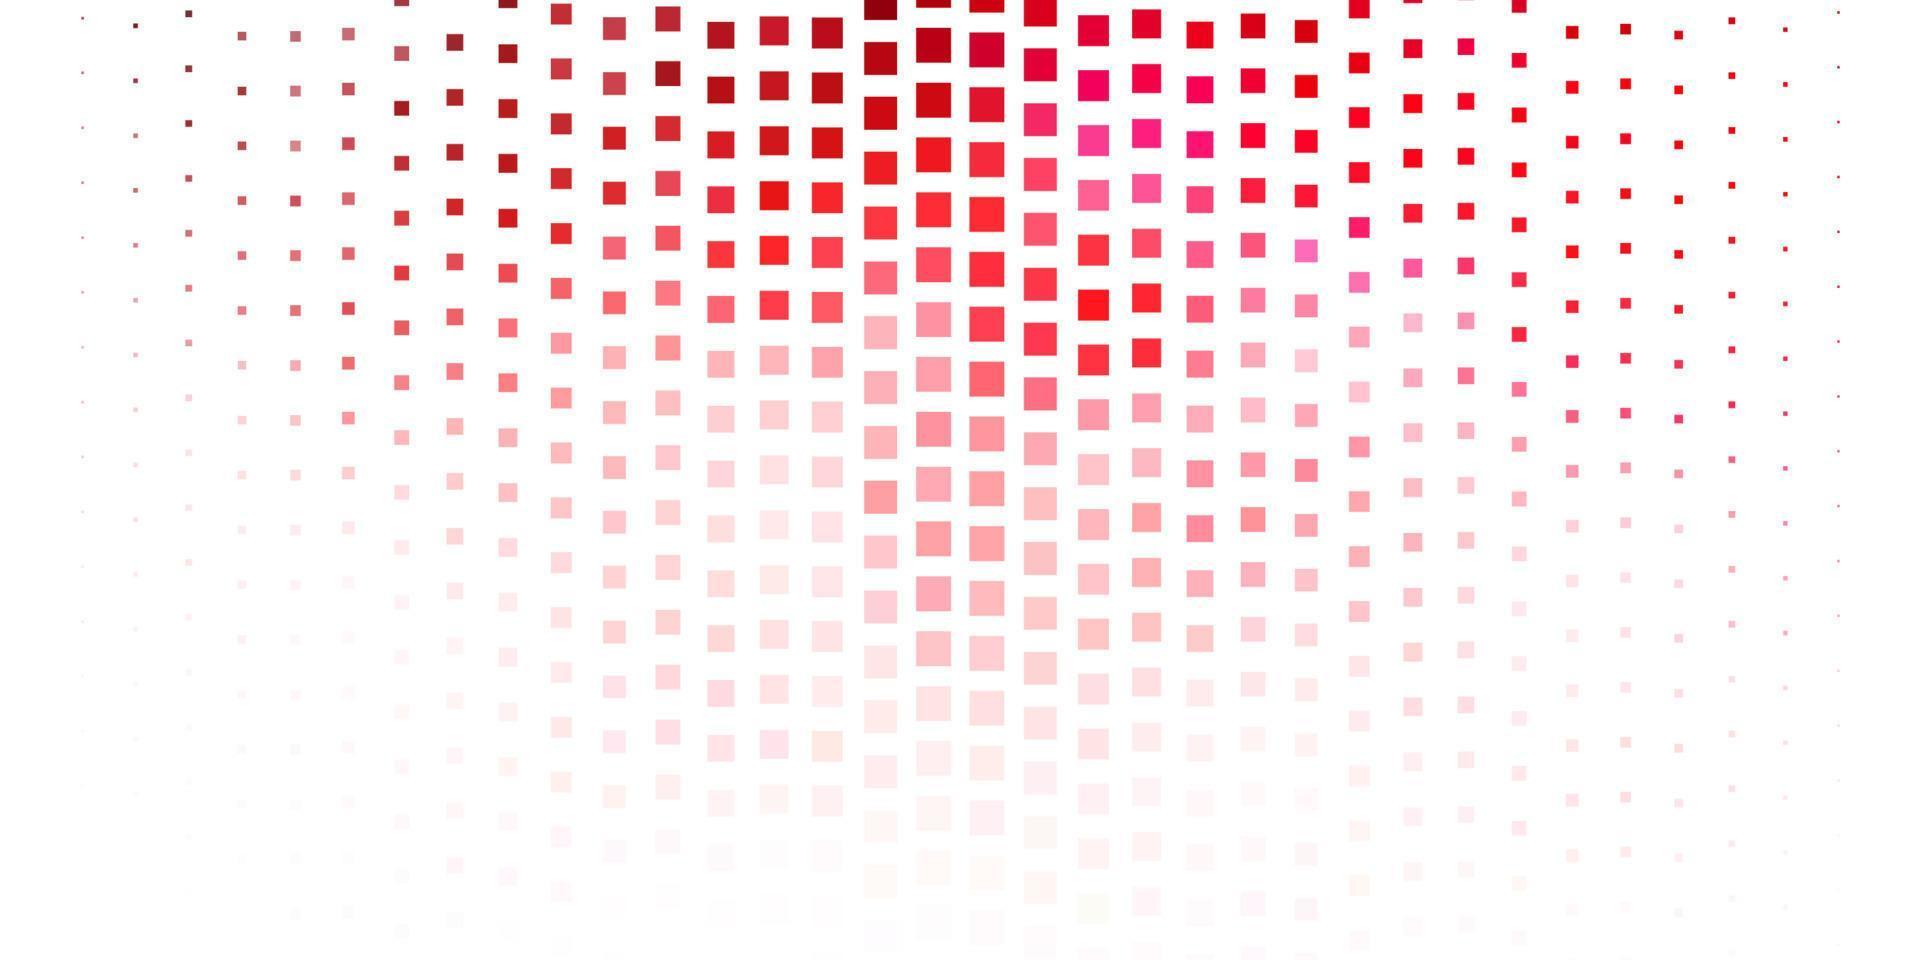 plantilla de vector rosa claro, rojo en rectángulos.